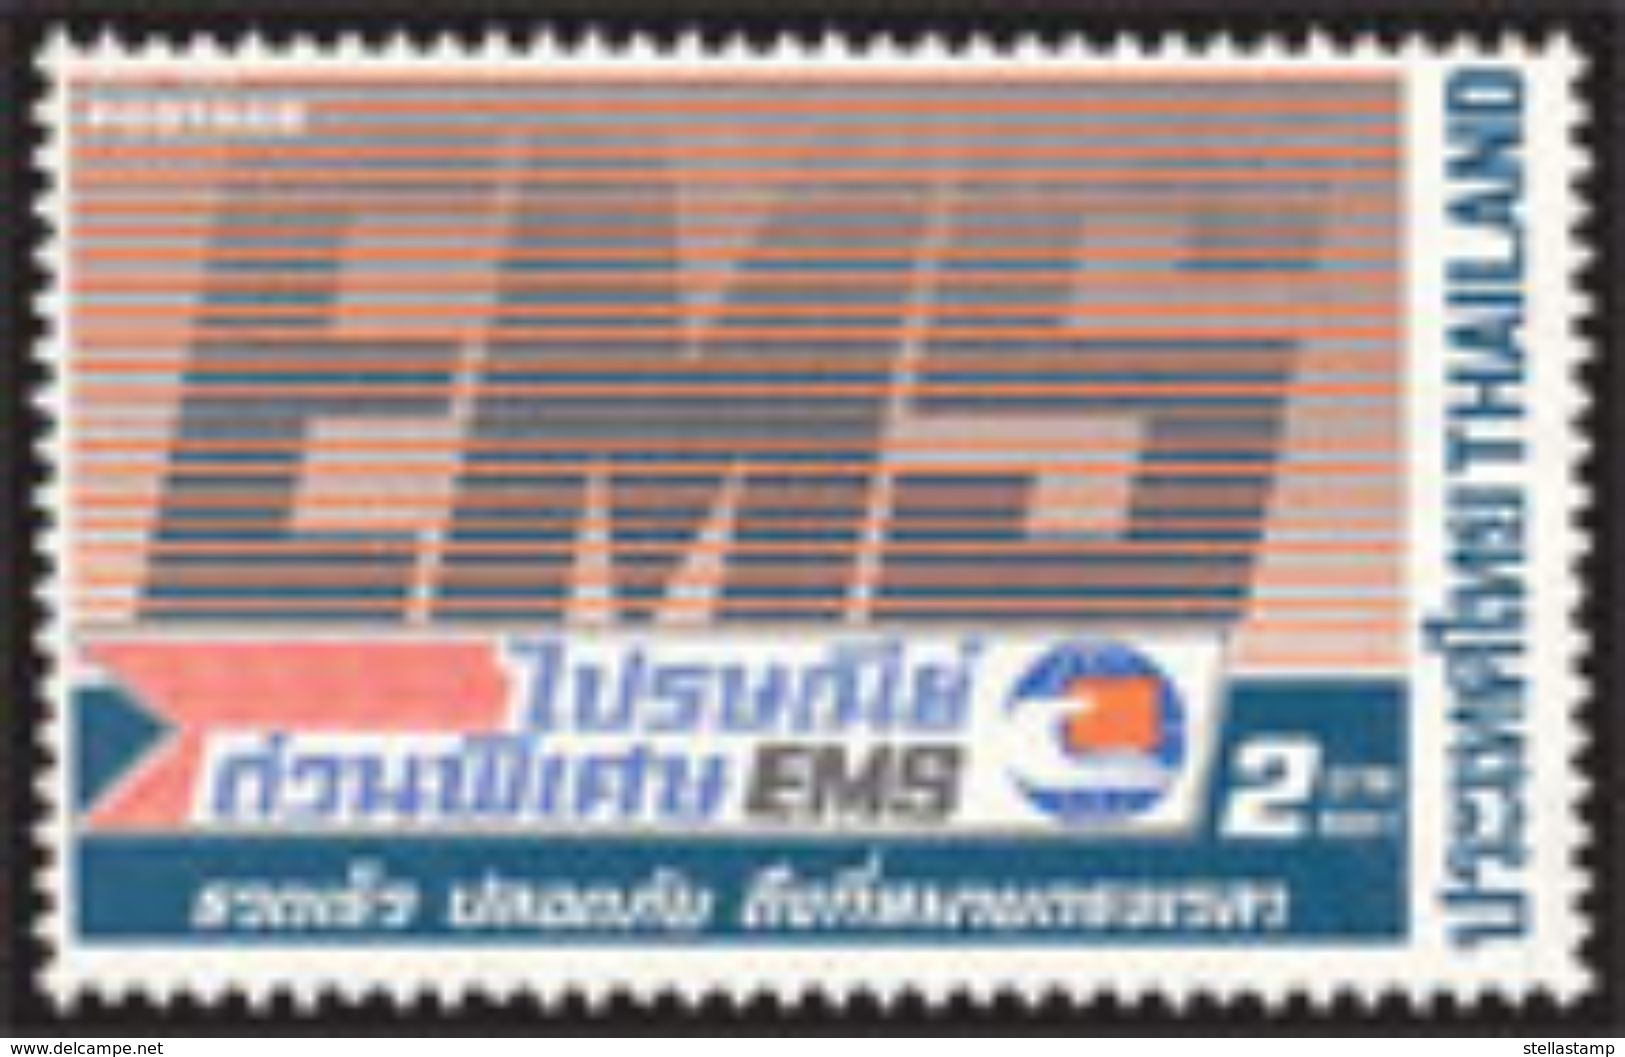 Thailand Stamp 1986 Express Mail Service EMS - Thailand